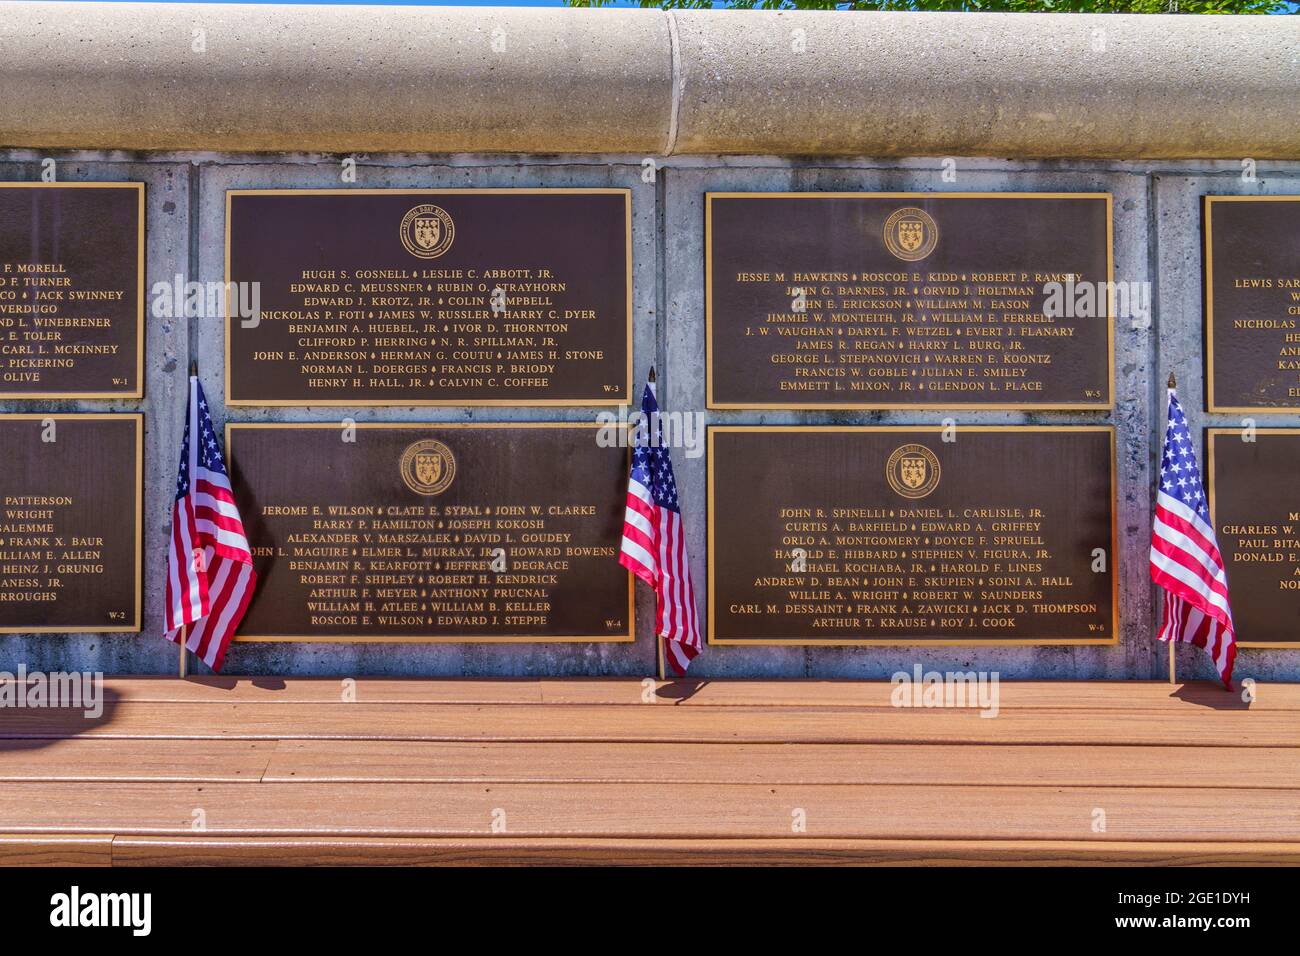 Die Gedenkmauer, an der die gefallenen amerikanischen Soldaten auf der Elmon T. Gray Plaza im National D-Day Memorial in Bedford, Virginia, aufgeführt sind. Stockfoto